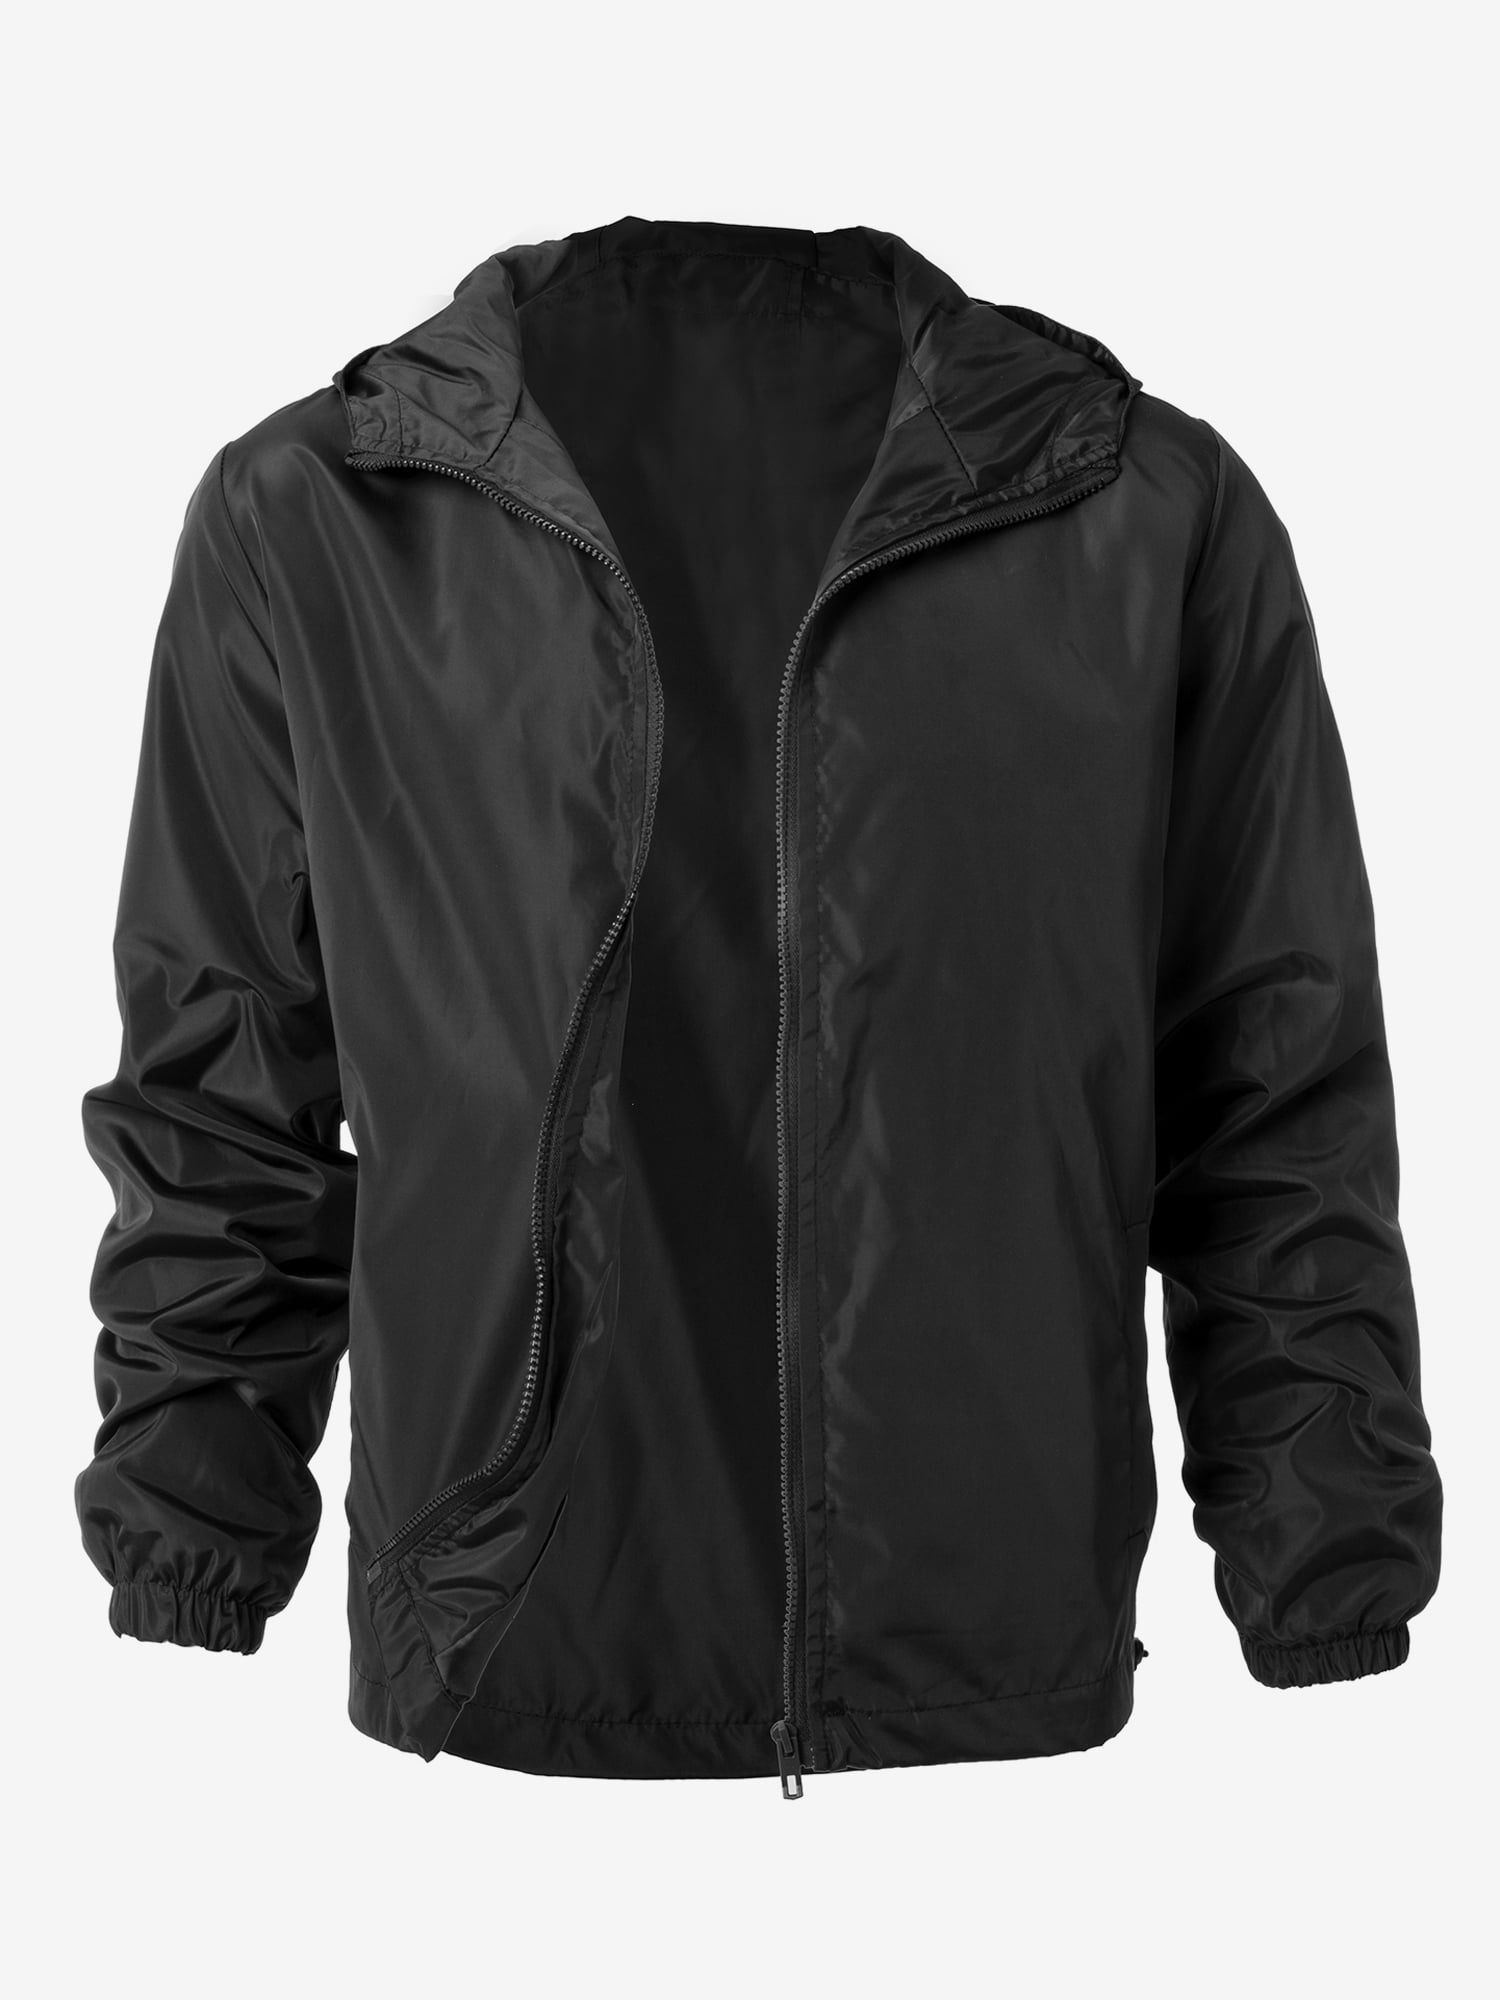 Mens Semi Fleece Lined  Winter Waterproof Breathable Coat Jacket size M to 6XL,